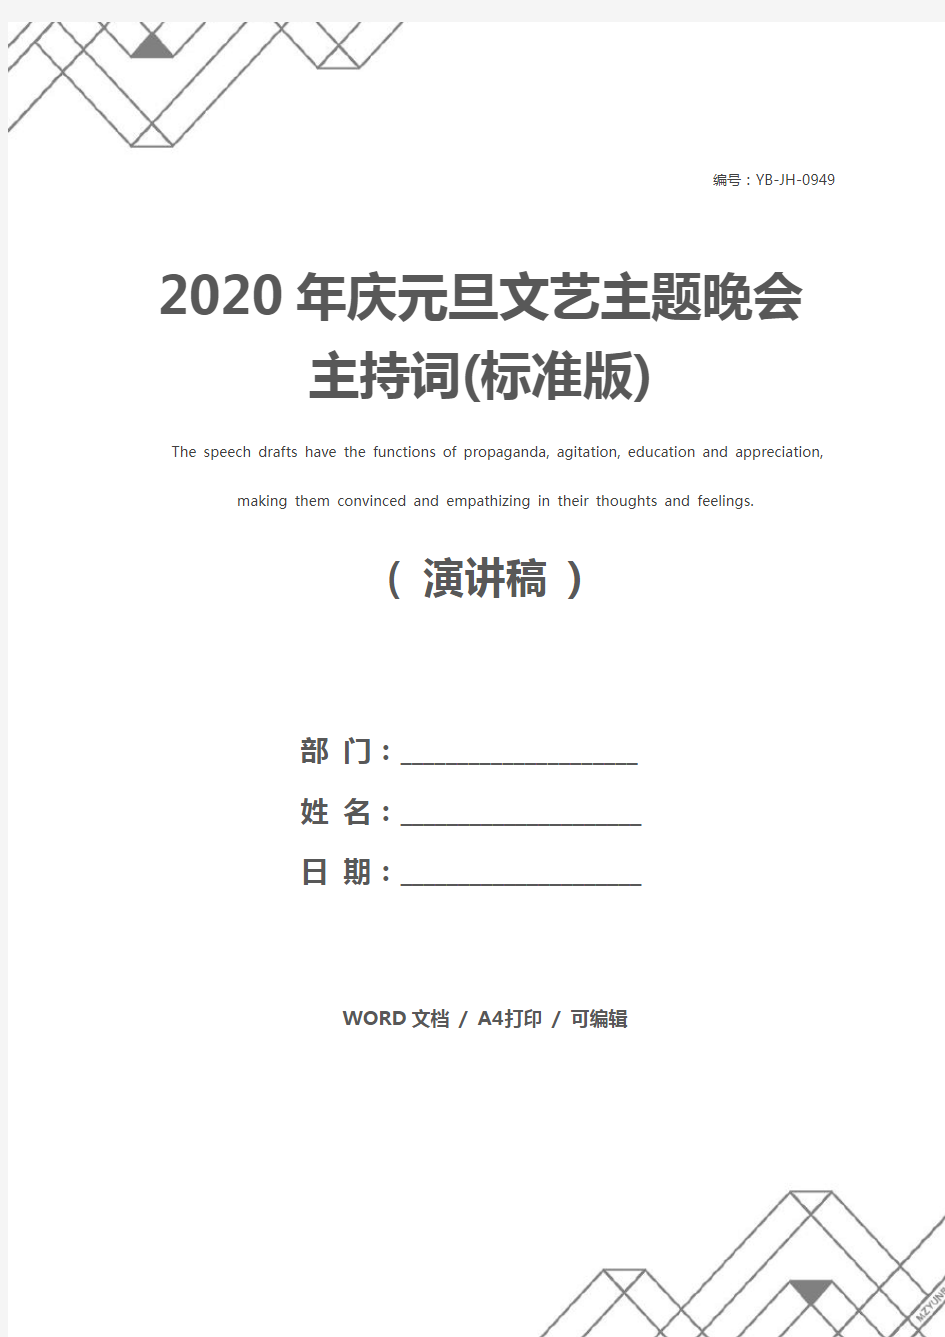 2020年庆元旦文艺主题晚会主持词(标准版)